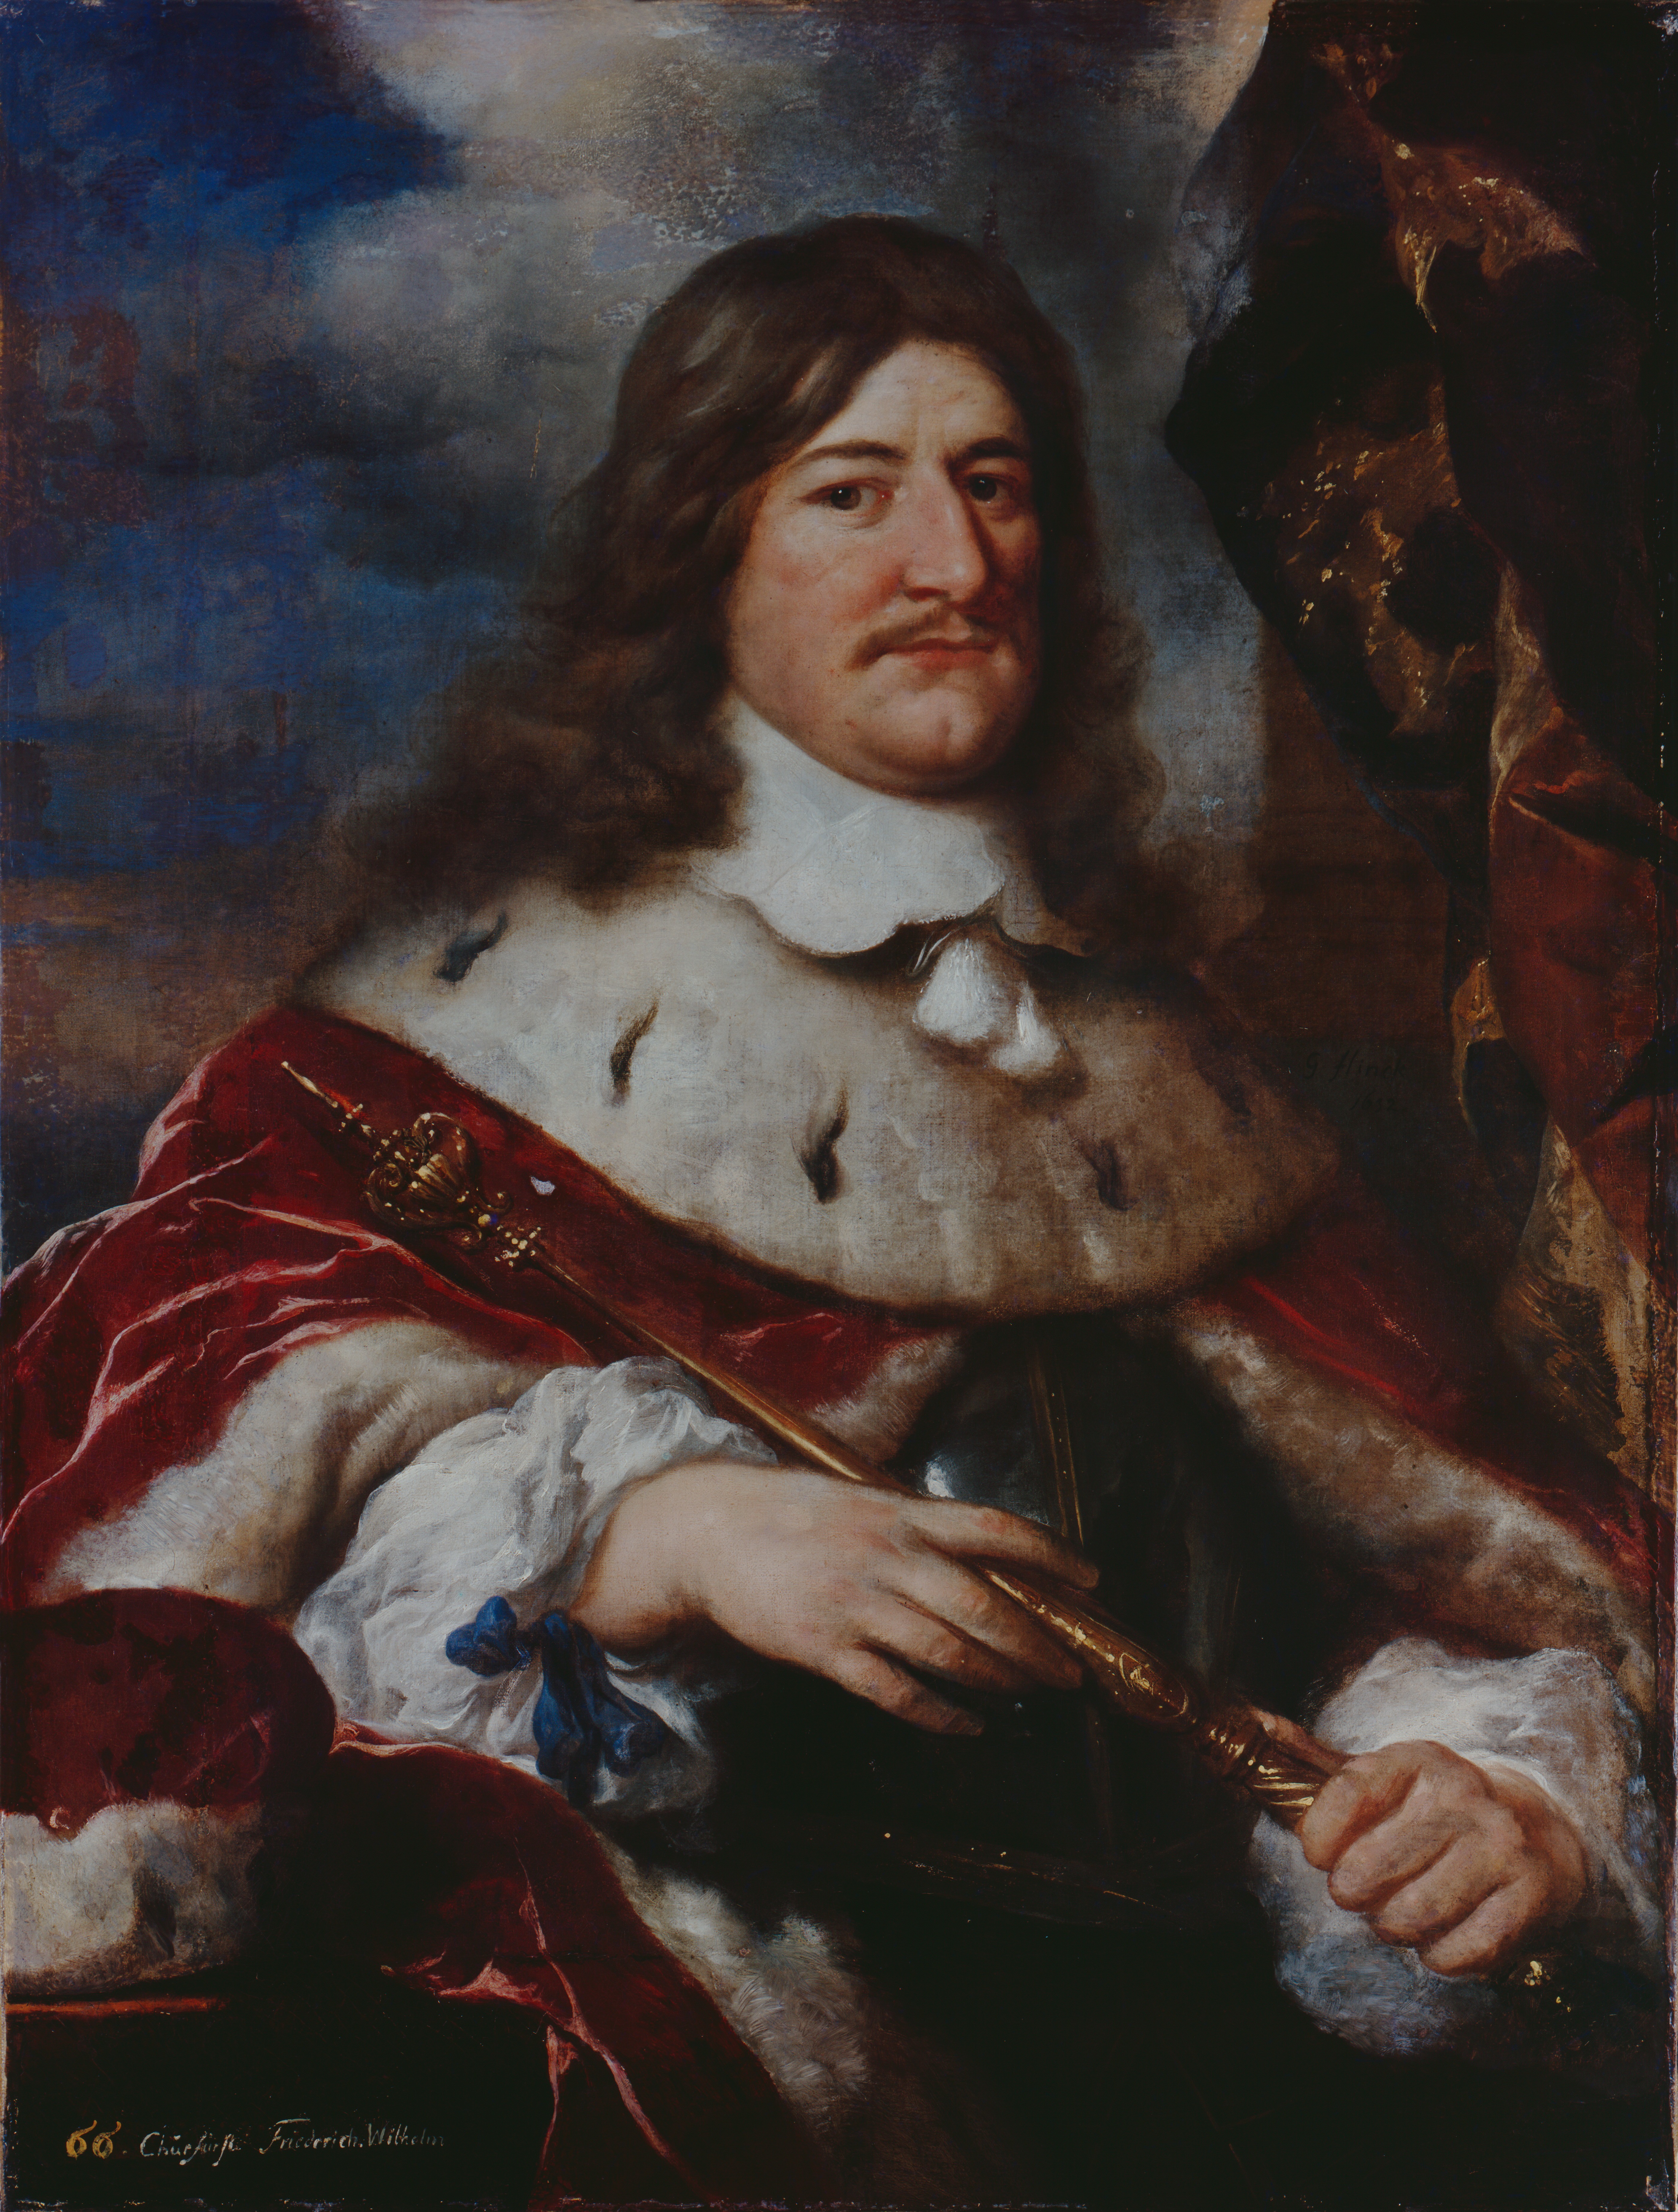 Flinck, Govaert: Kurfürst Friedrich Wilhelm, 1652, GK I 997. (Stiftung Preußische Schlösser und Gärten Berlin-Brandenburg CC BY-NC-SA)